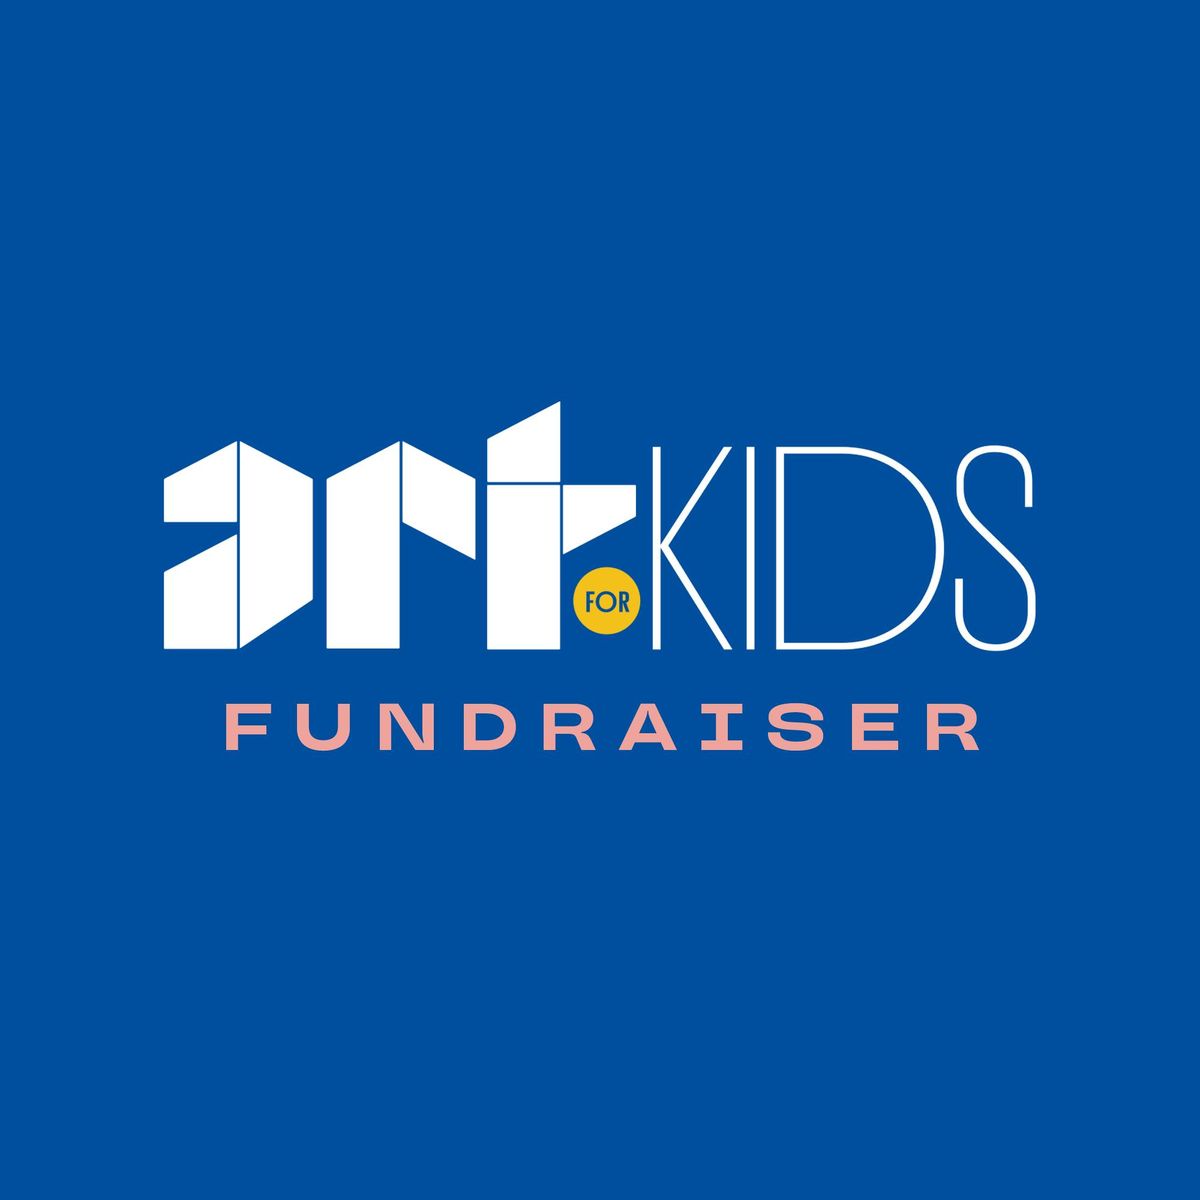 Art For Kids: Fundraiser by Tauranga Art Gallery